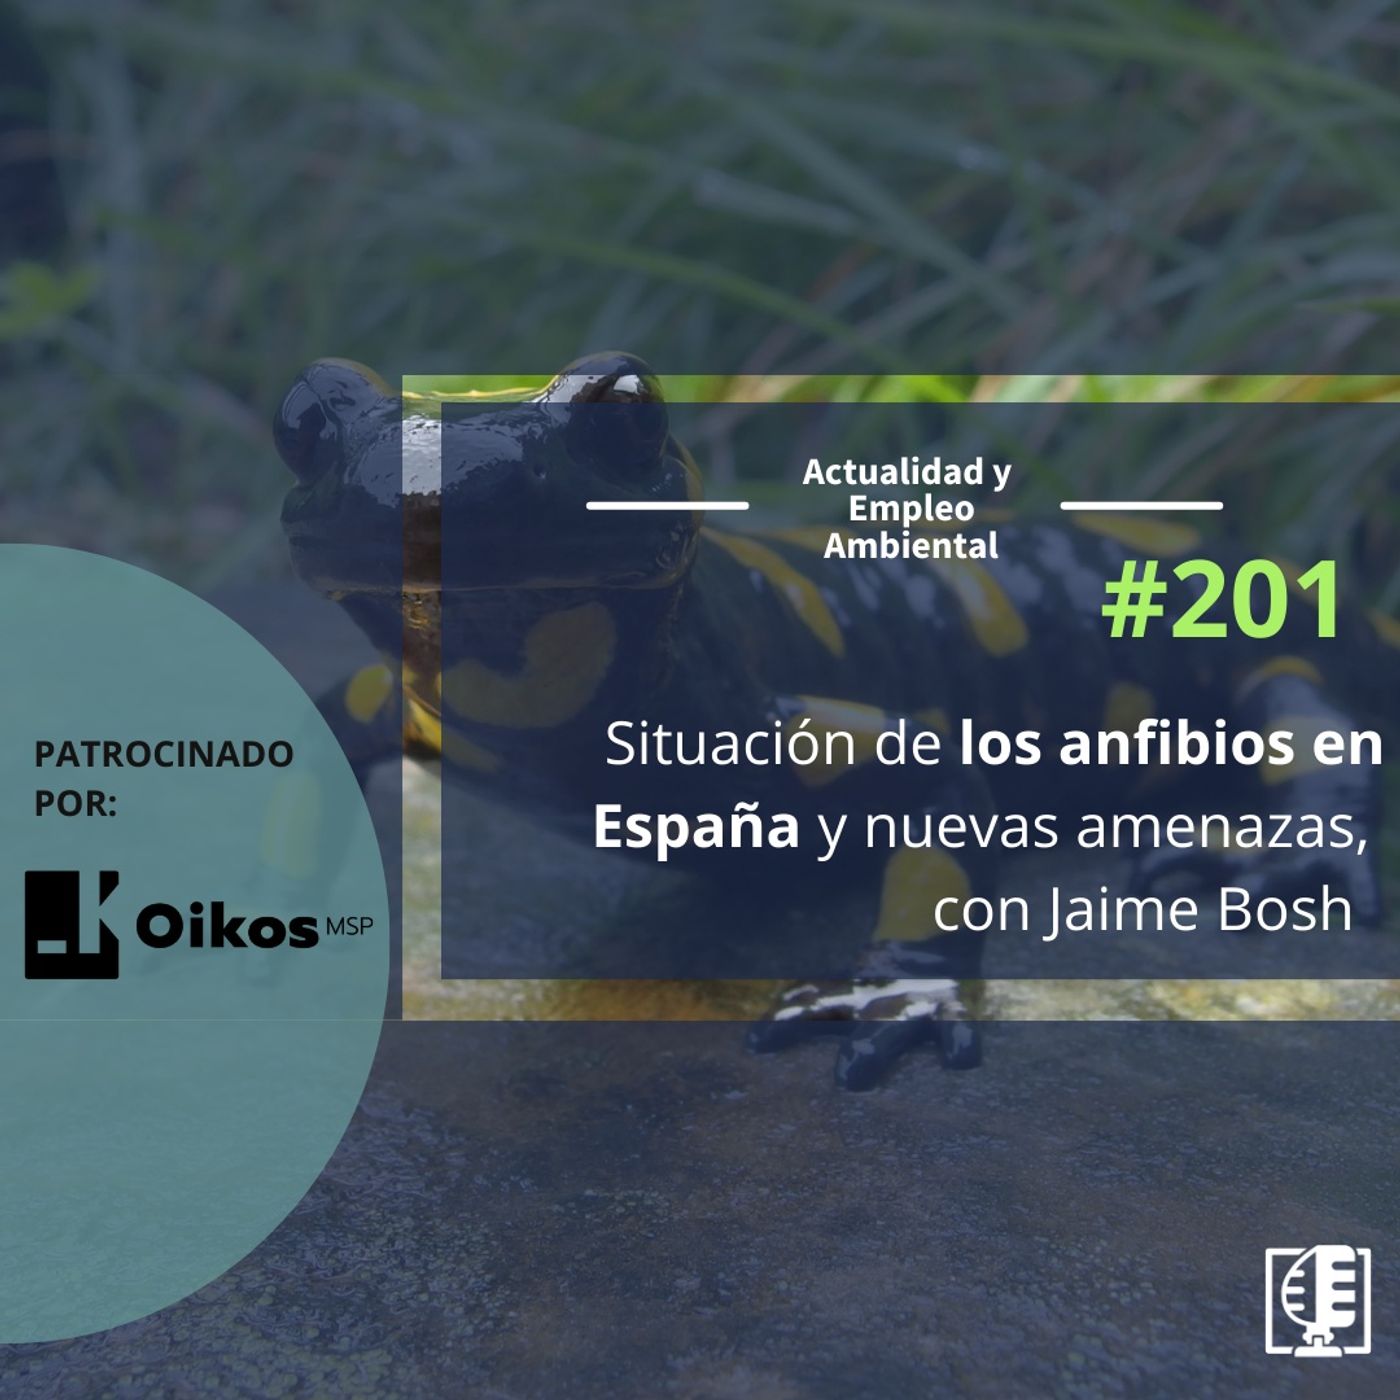 Situación de los anfibios en España y nuevas amenazas, con Jaime Bosch #201